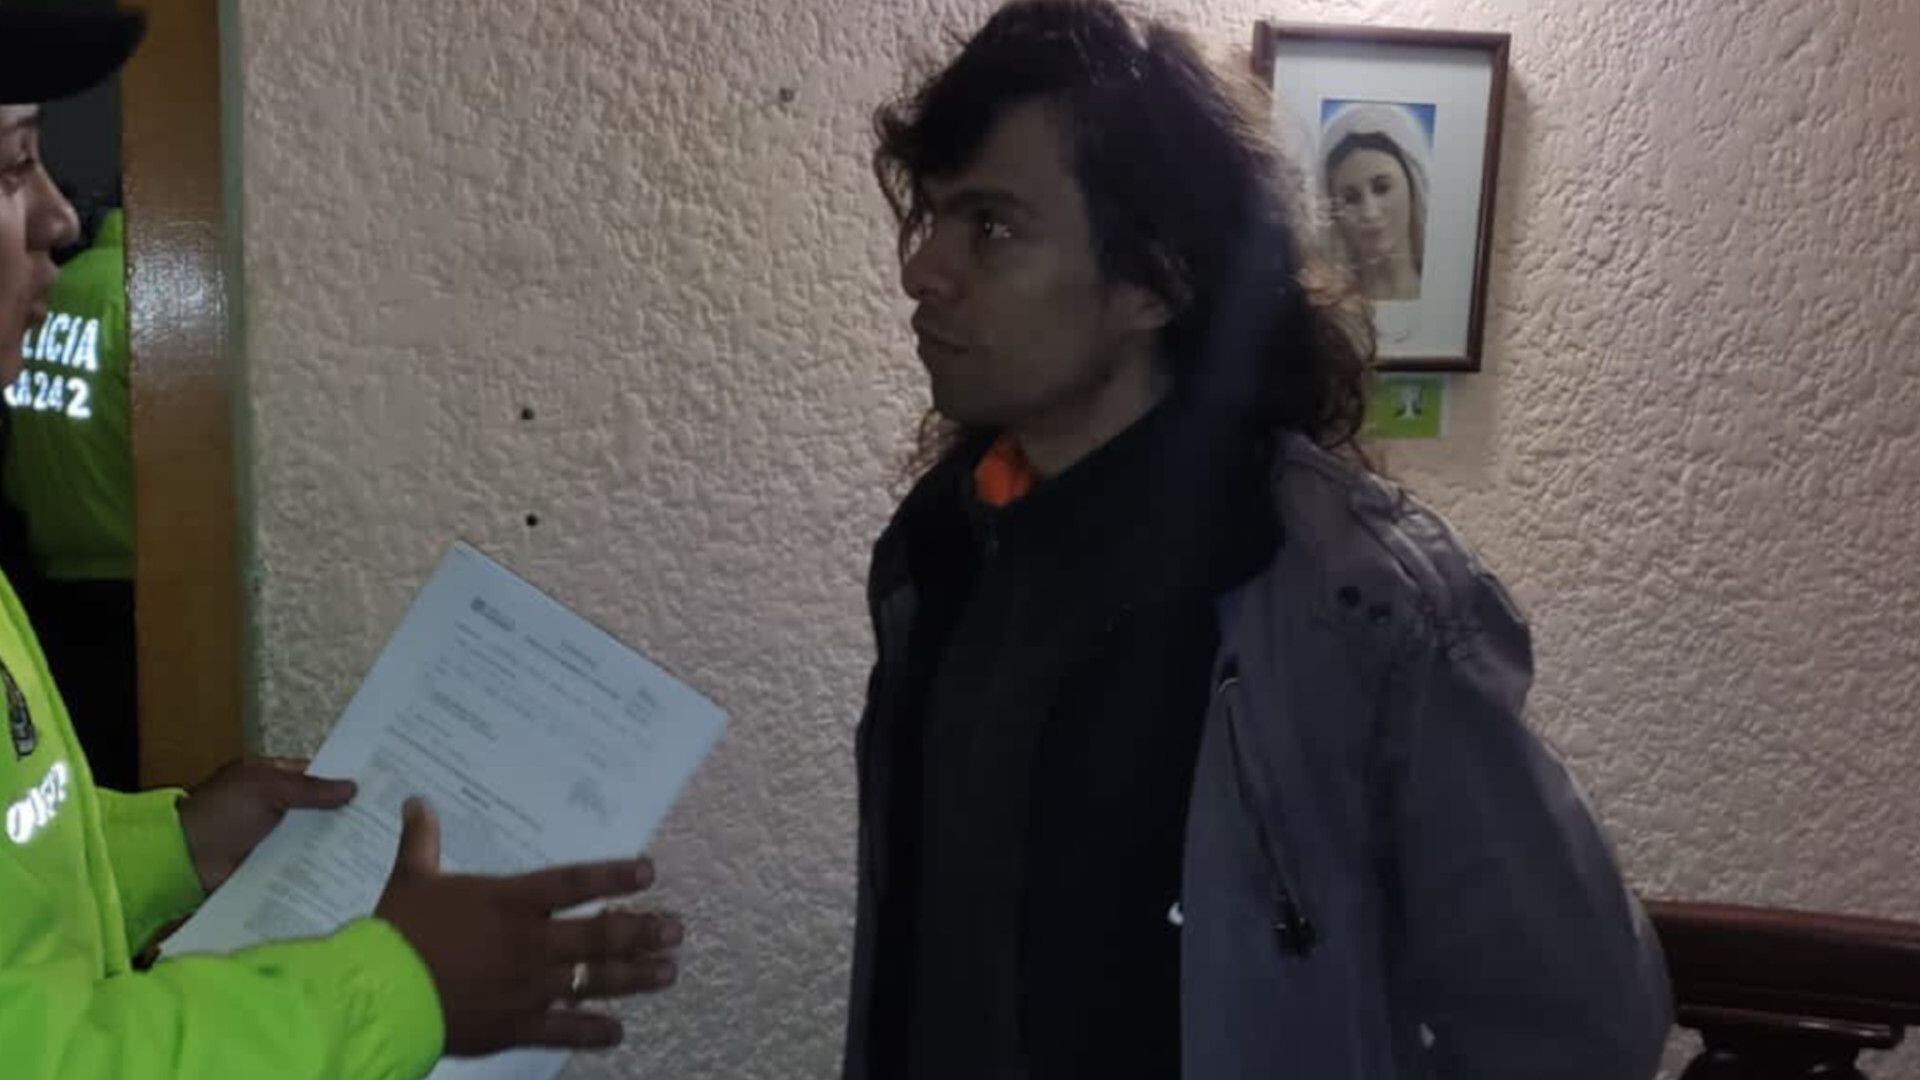 La Policía inició una investigación disciplinaria interna tras la muerte de Juan Pablo González, señalado de abusar sexualmente de una menor en Transmilenio, luego de ser capturado. Foto: Secretaría de Seguridad de Bogotá